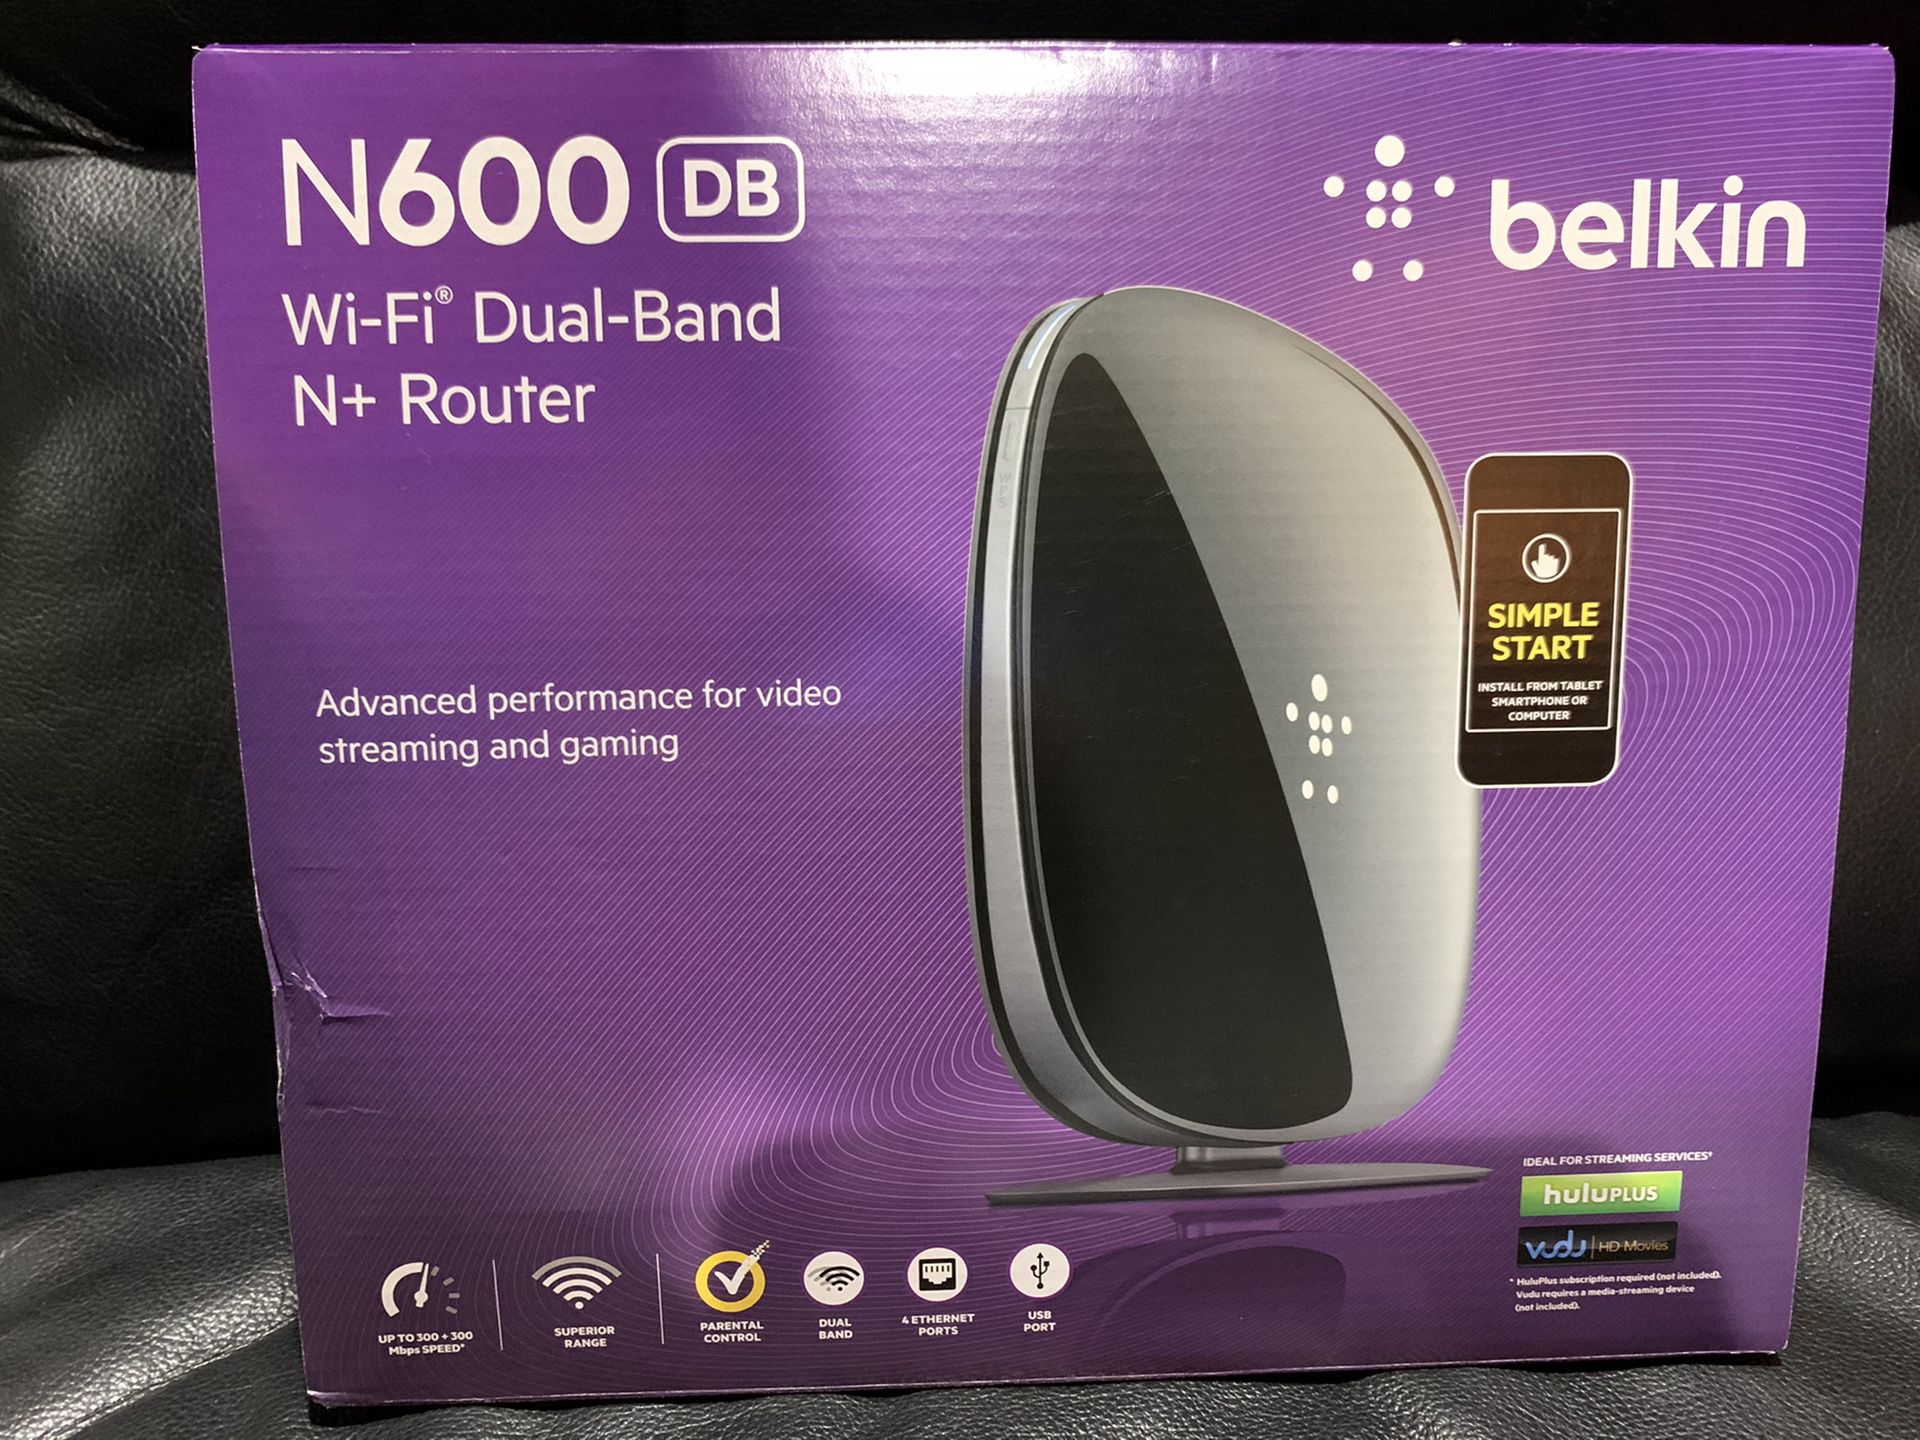 Belkin N600 DB Wireless Router